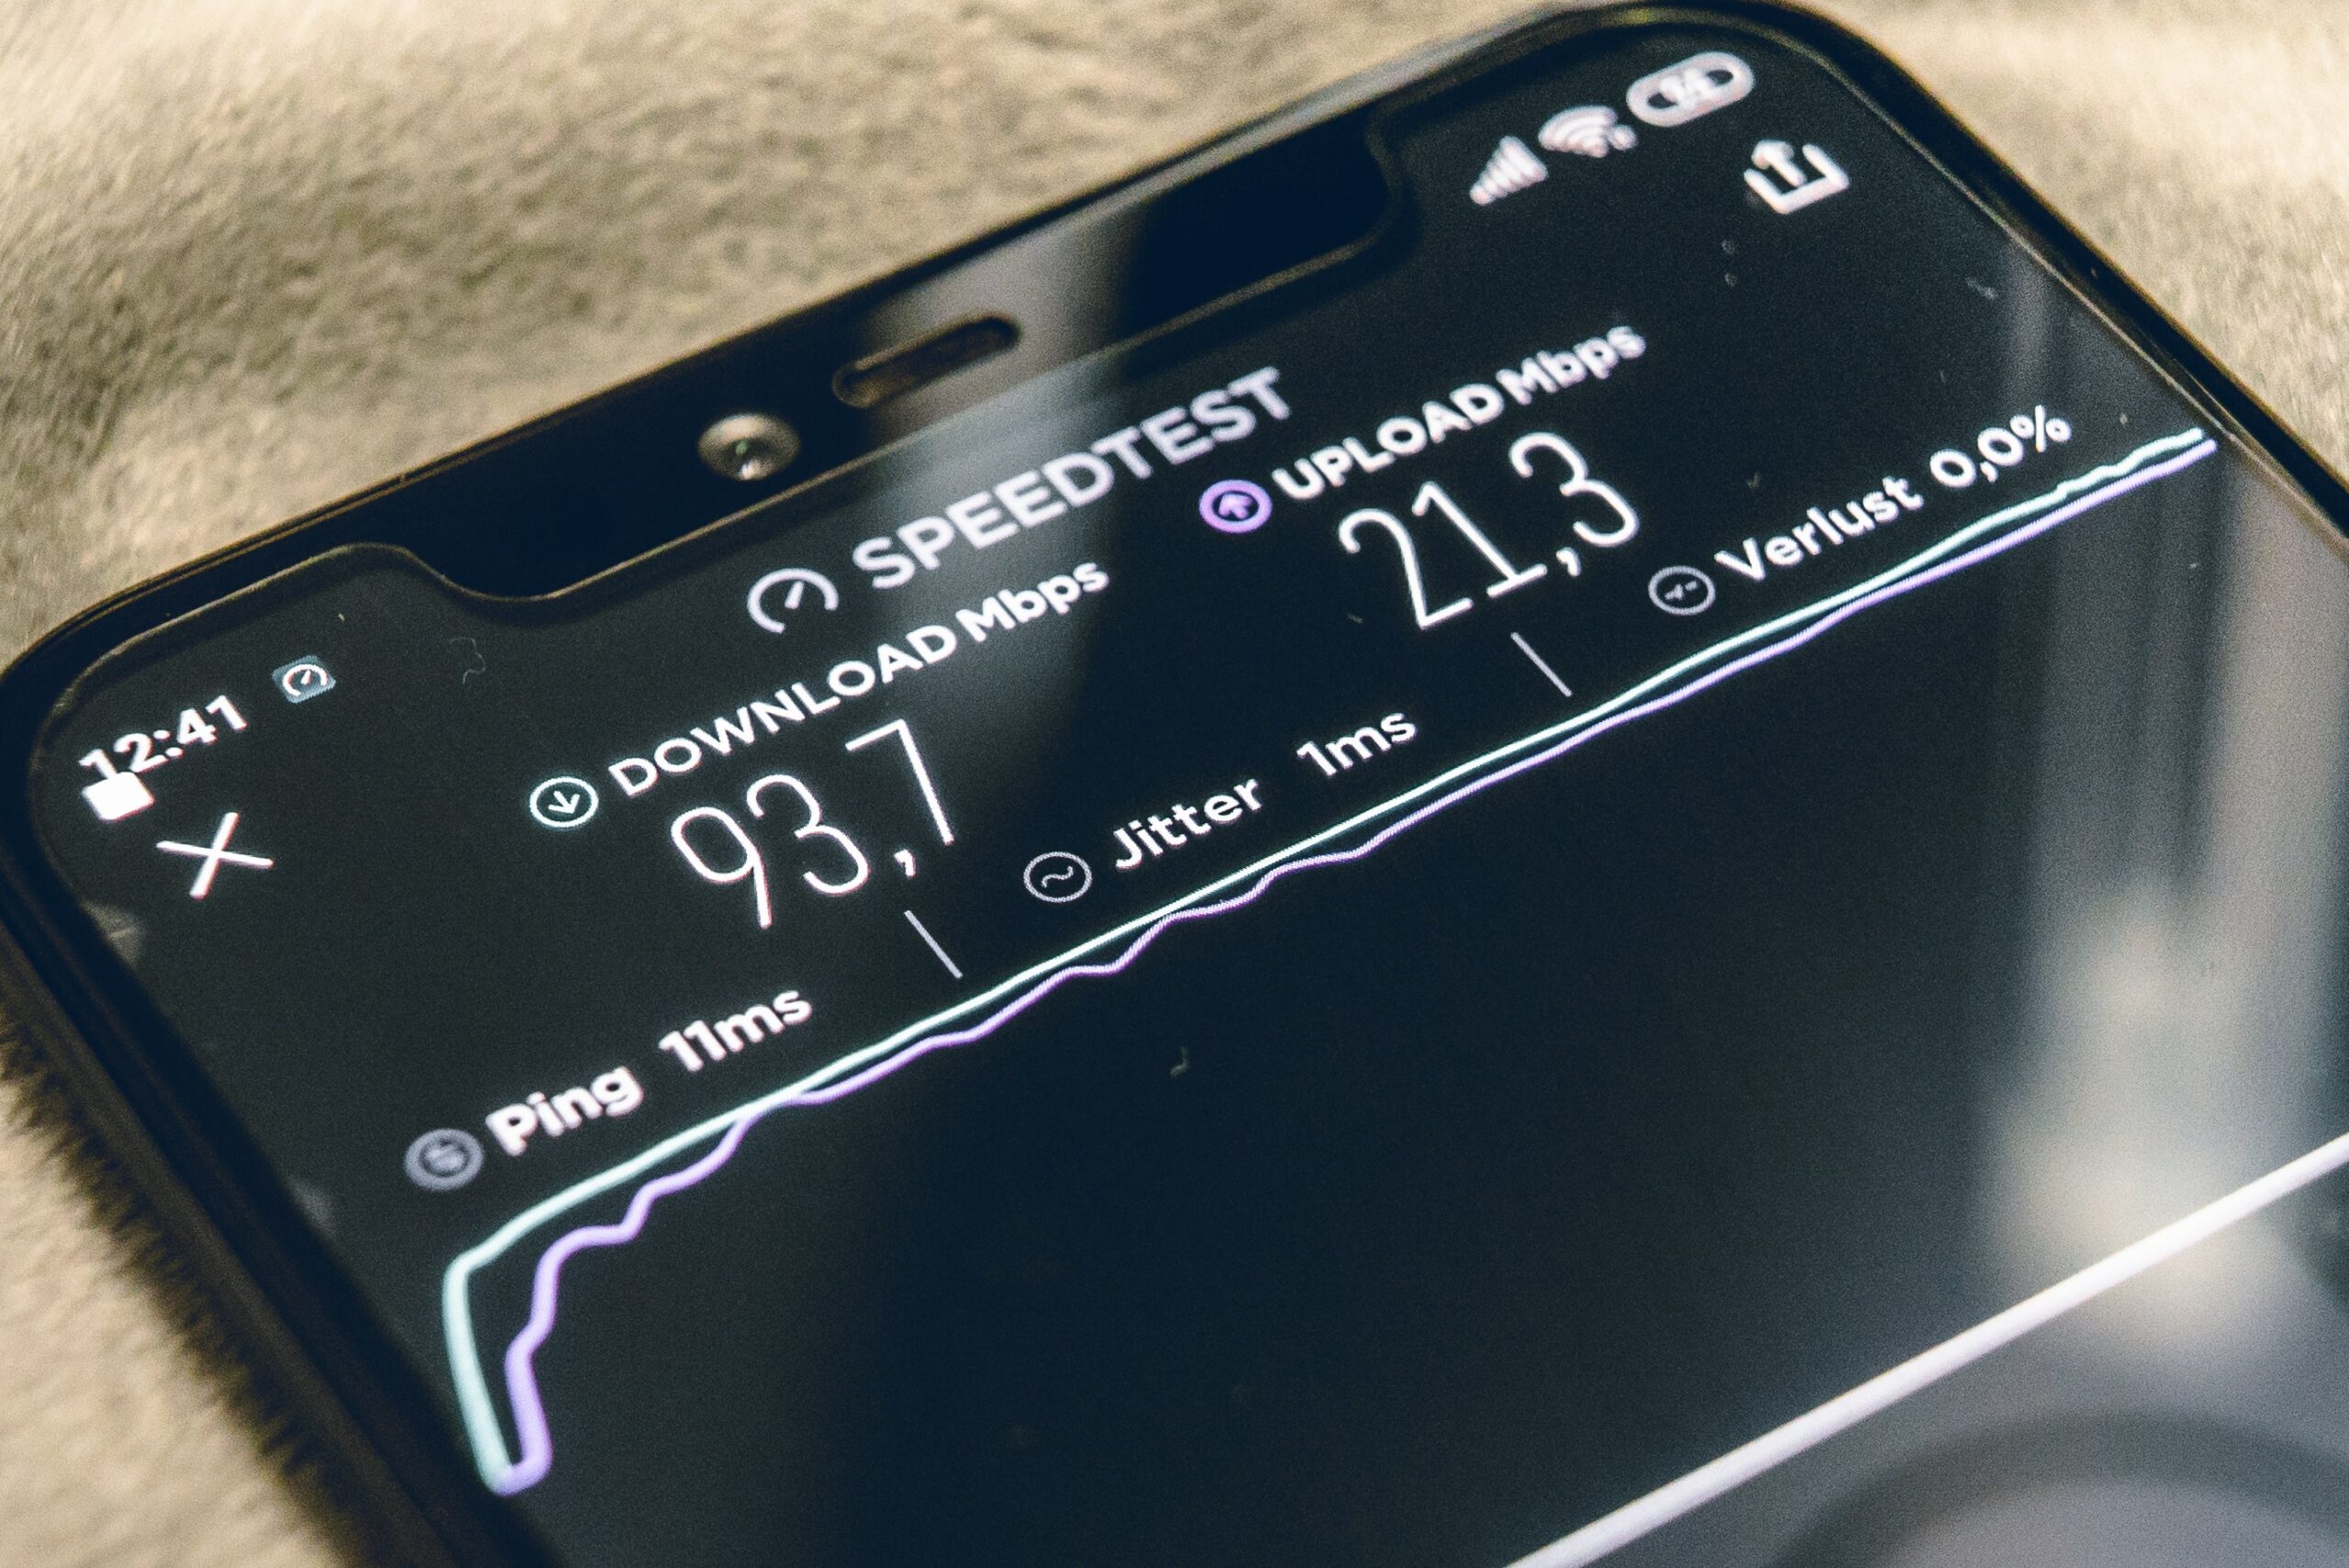 In den Geschwindigkeitstests schneidet 5G in der Regel besser ab als 4G (LTE), aber leider ist es nur an wenigen Stellen in Deutschland ausgebaut.